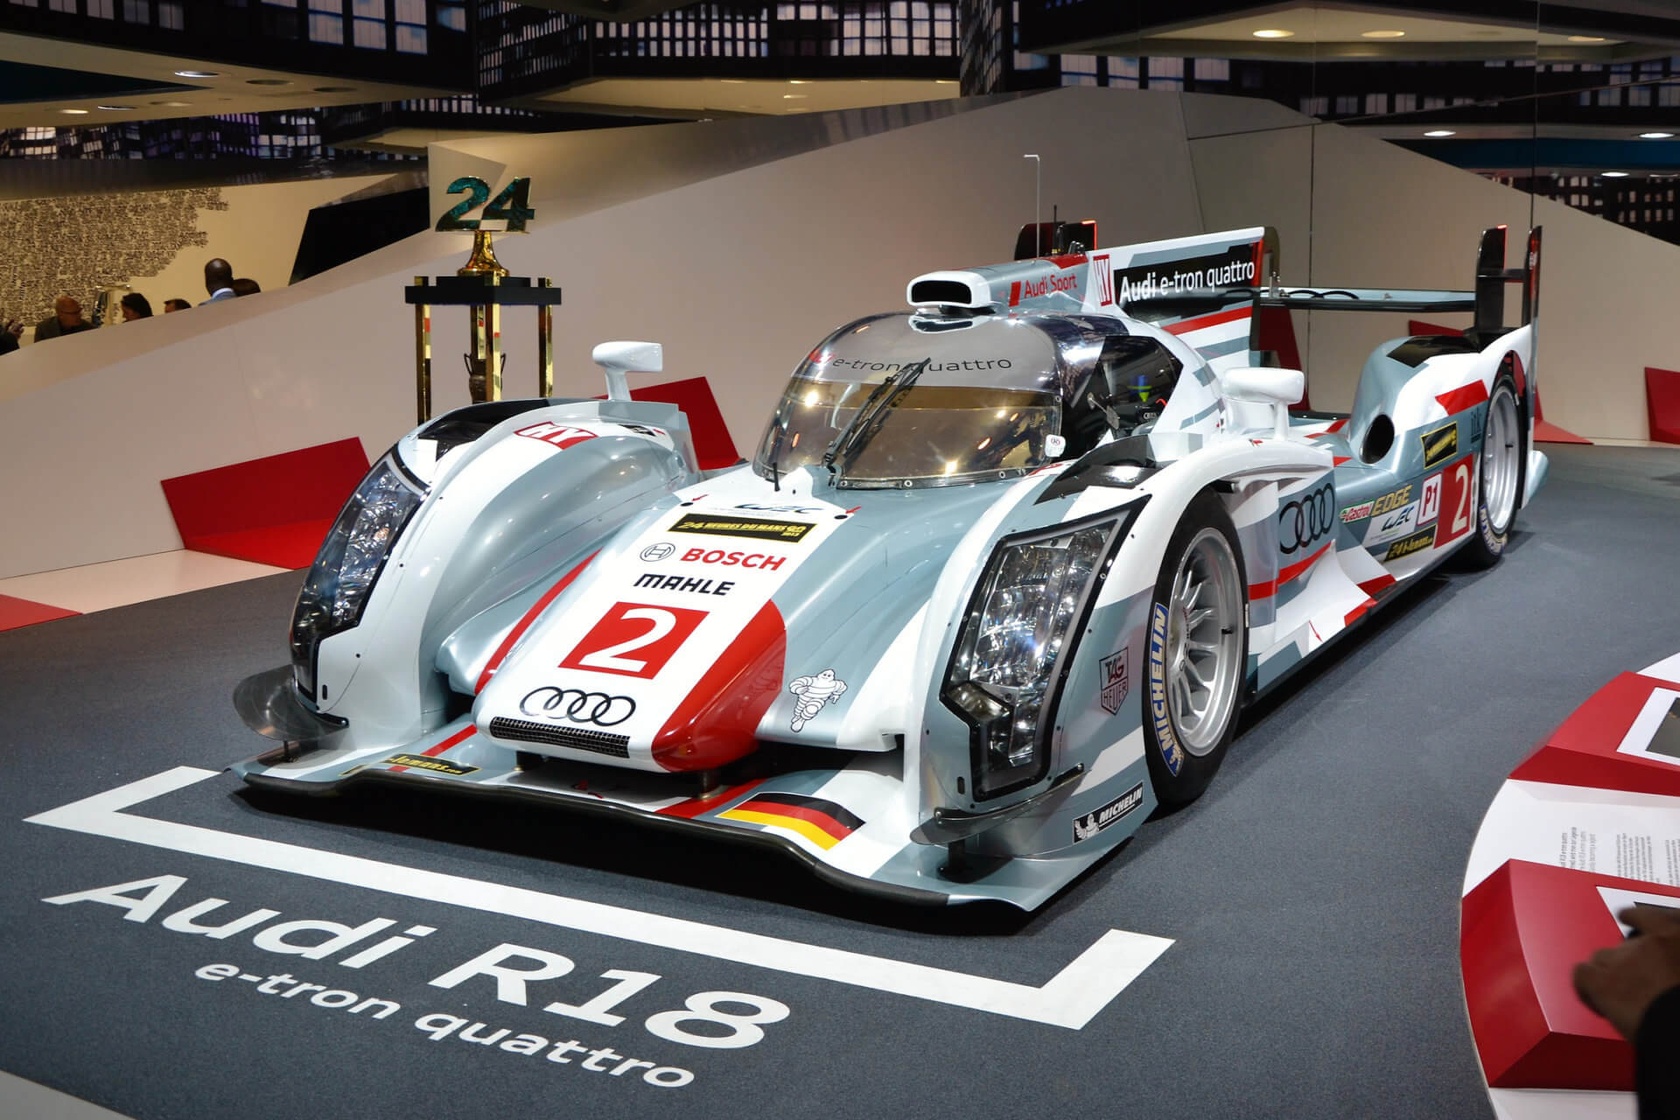 Audi R18 e-tron quattro - samochody elektryczne uczestniczą już również w klasycznych zawodach sportowych. Oglądany model przygotowano na wyścig Le Mans.